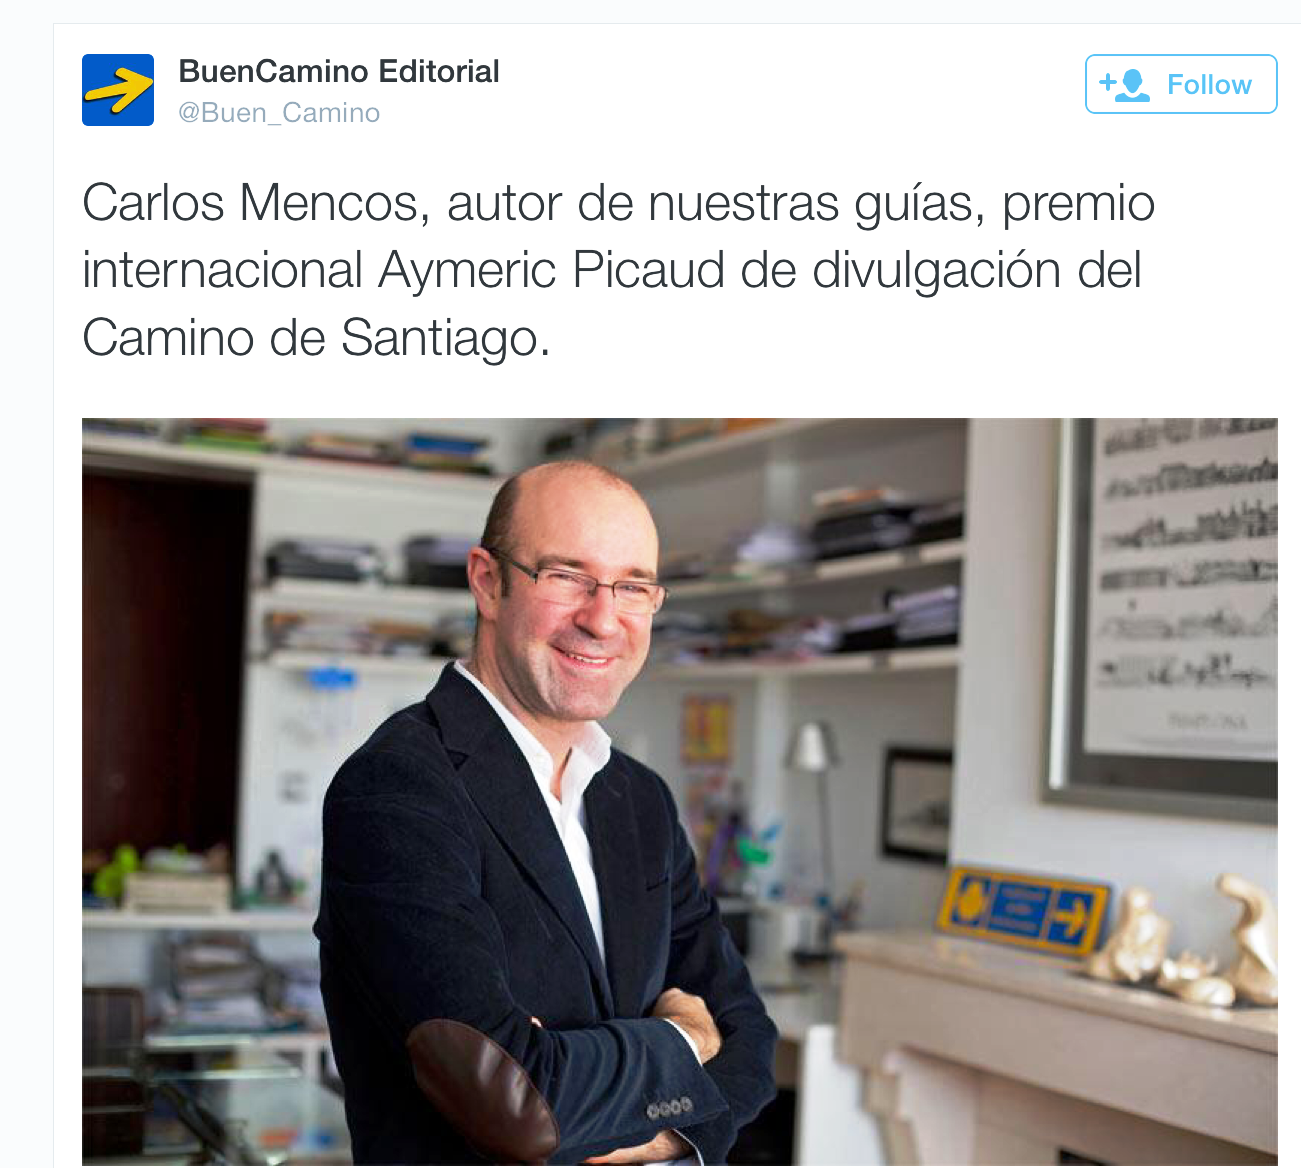 Carlos Mencos